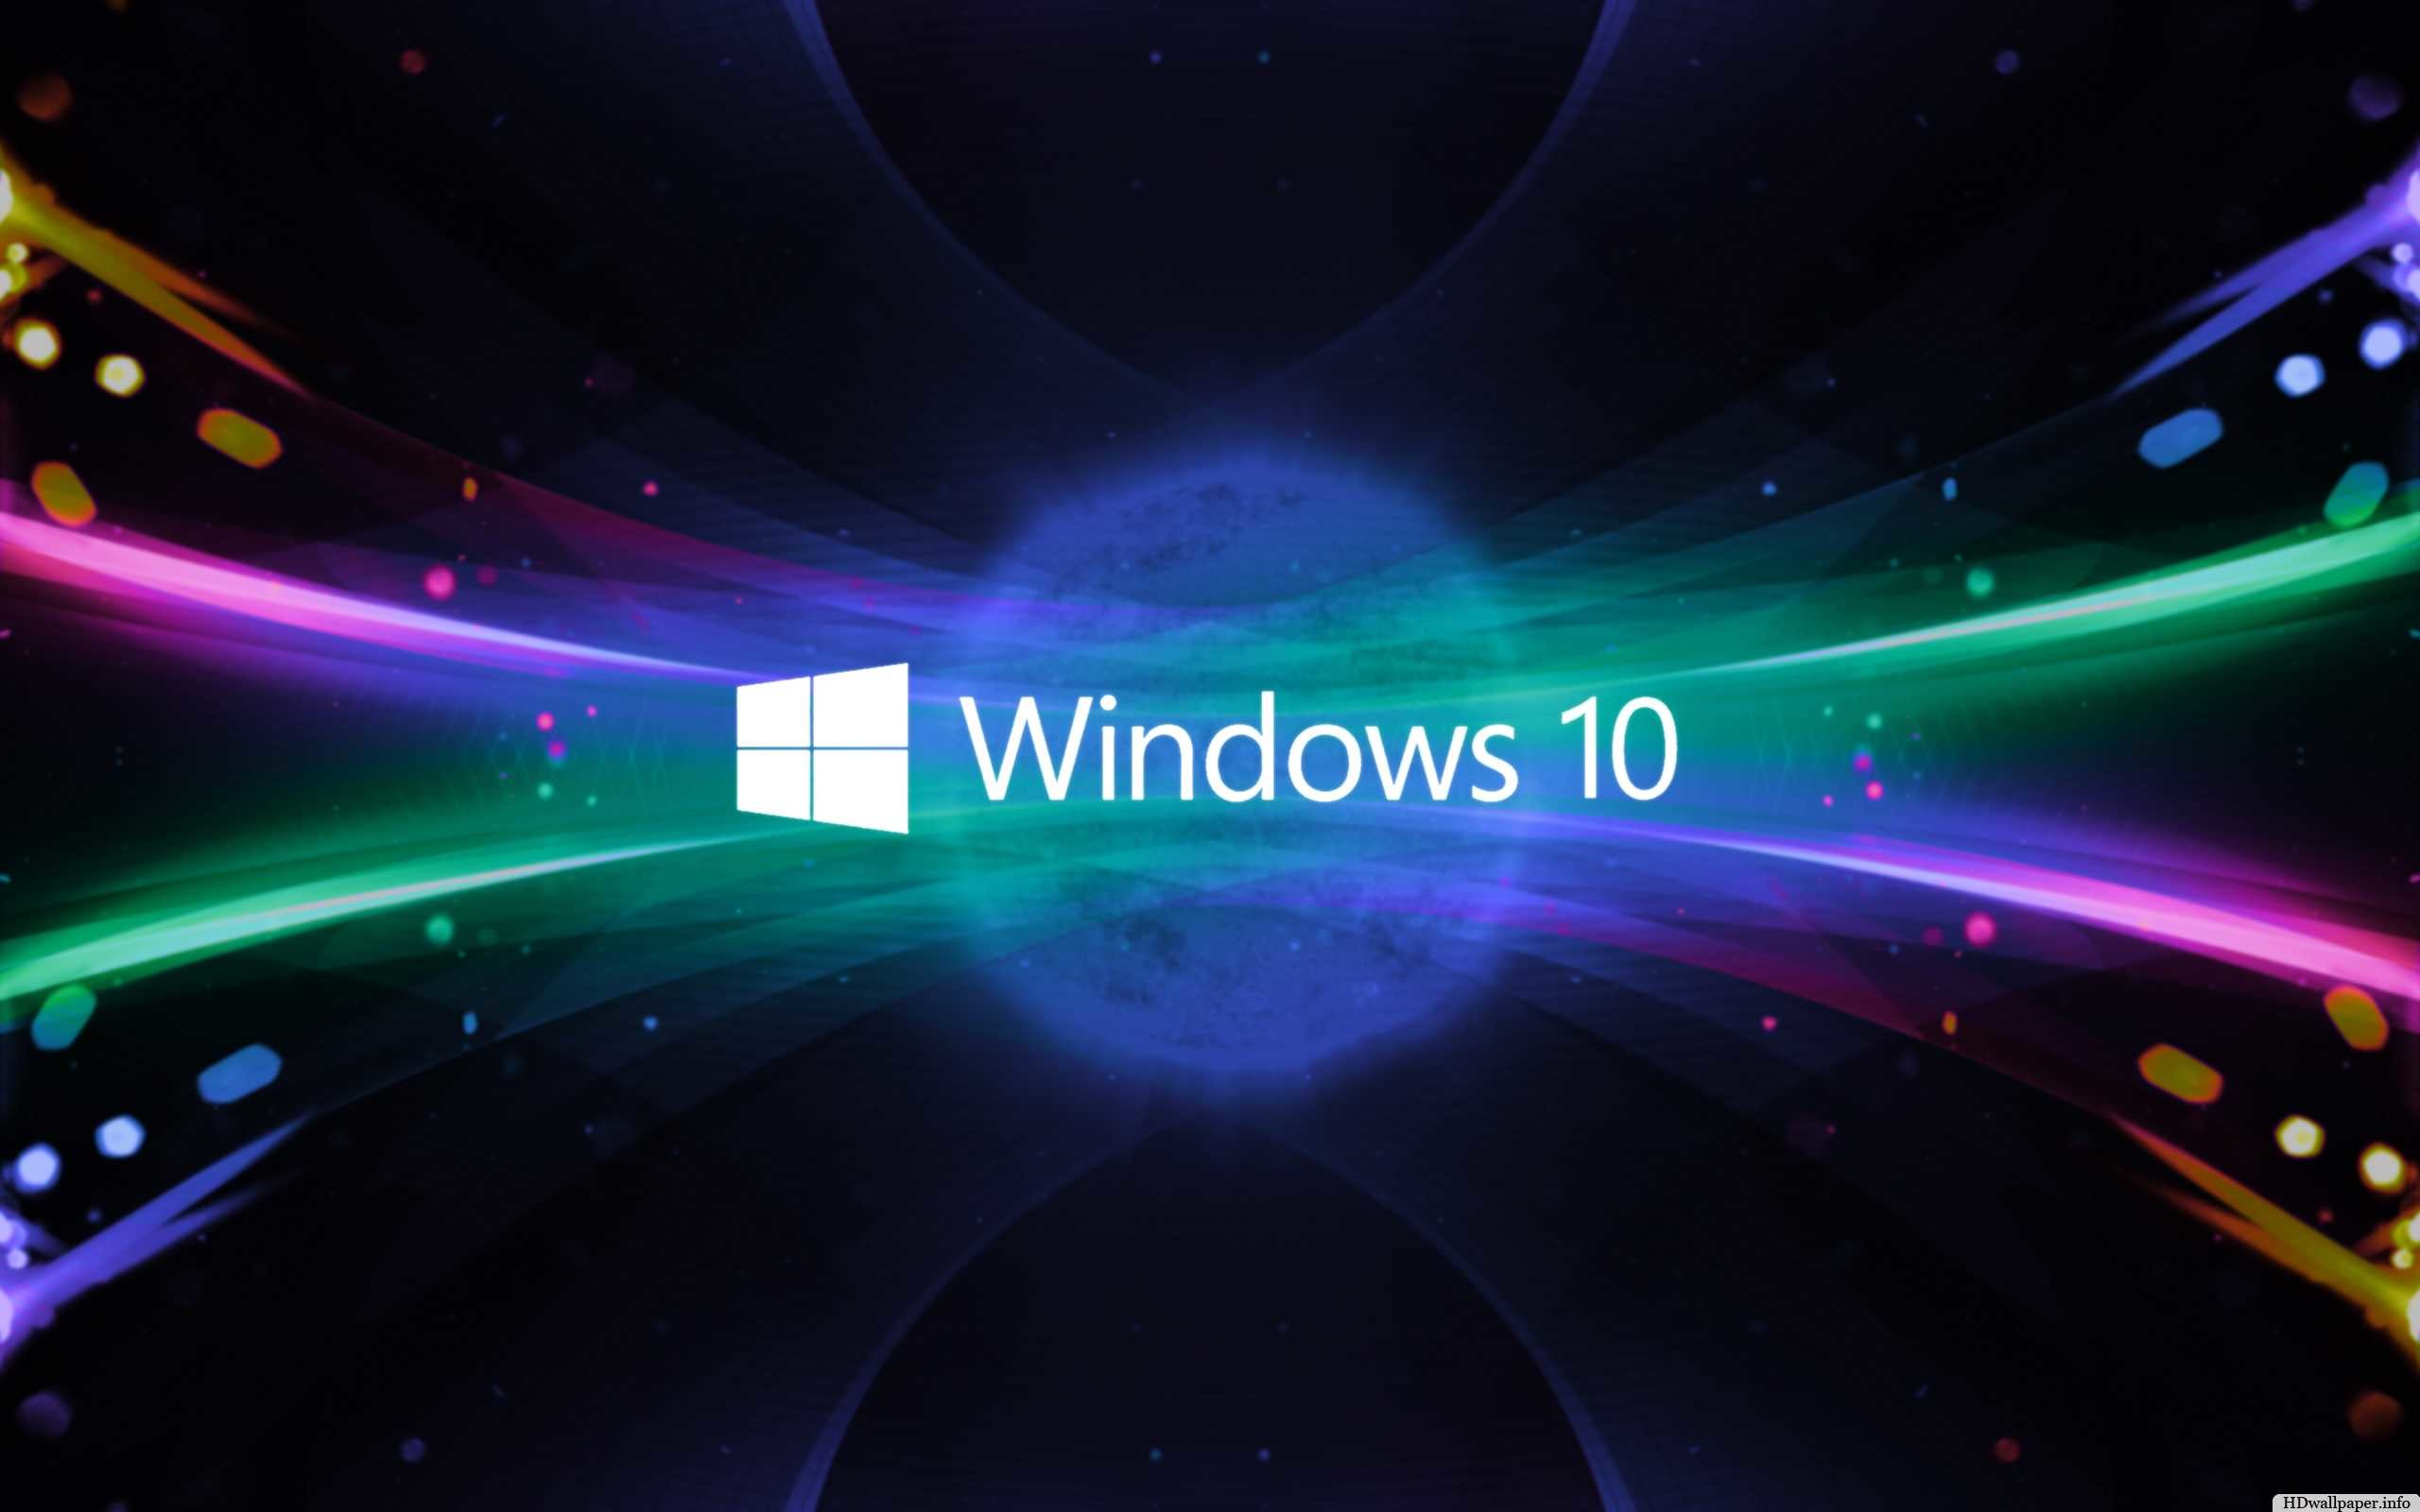 Với hình nền 3D trong Windows 10, bạn sẽ được trải nghiệm một không gian mới lạ và đầy ấn tượng. Những tấm ảnh chuyển động đẹp mắt sẽ khiến cho màn hình desktop của bạn trở nên sống động hơn bao giờ hết. Hãy cùng khám phá ngay để tận hưởng trọn vẹn công nghệ 3D đỉnh cao trên Windows 10 nhé!